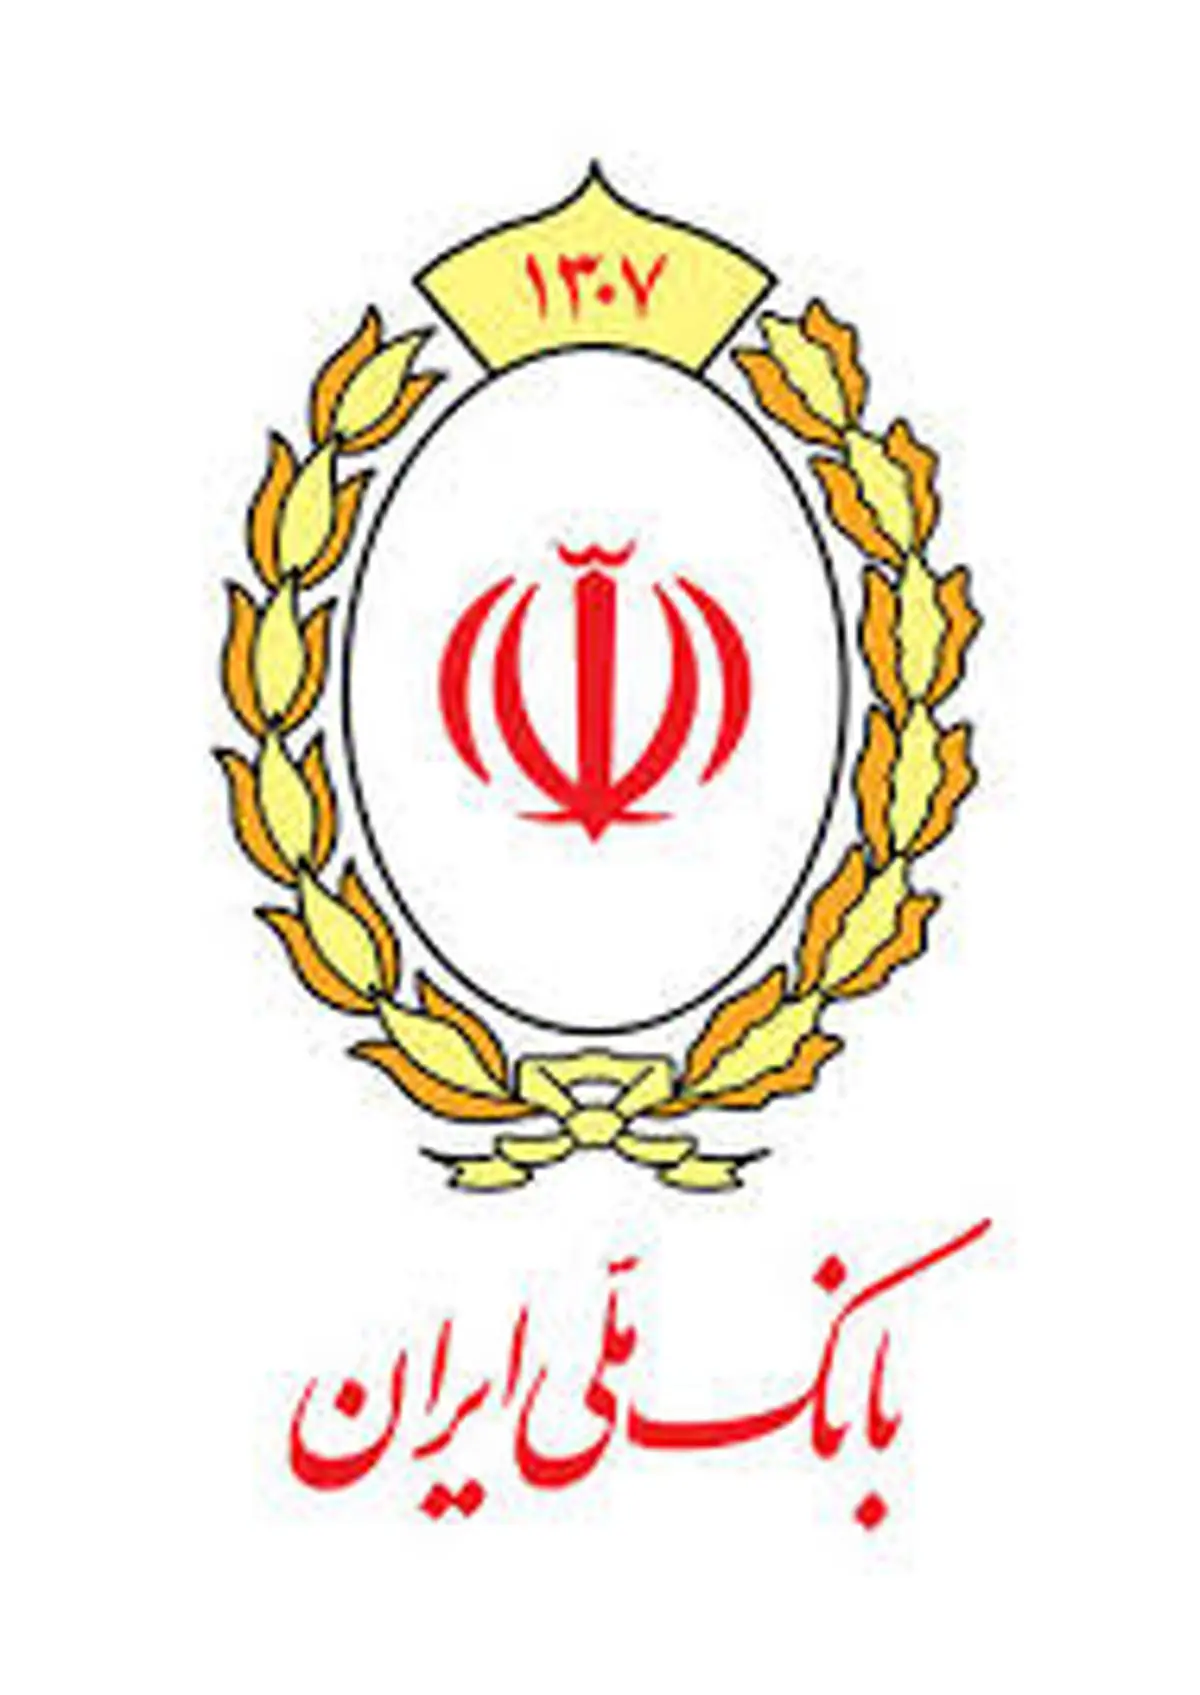 حمایت بانک ملی ایران از پنج هزار واحد مشاغل خانگی و خوداشتغالی

